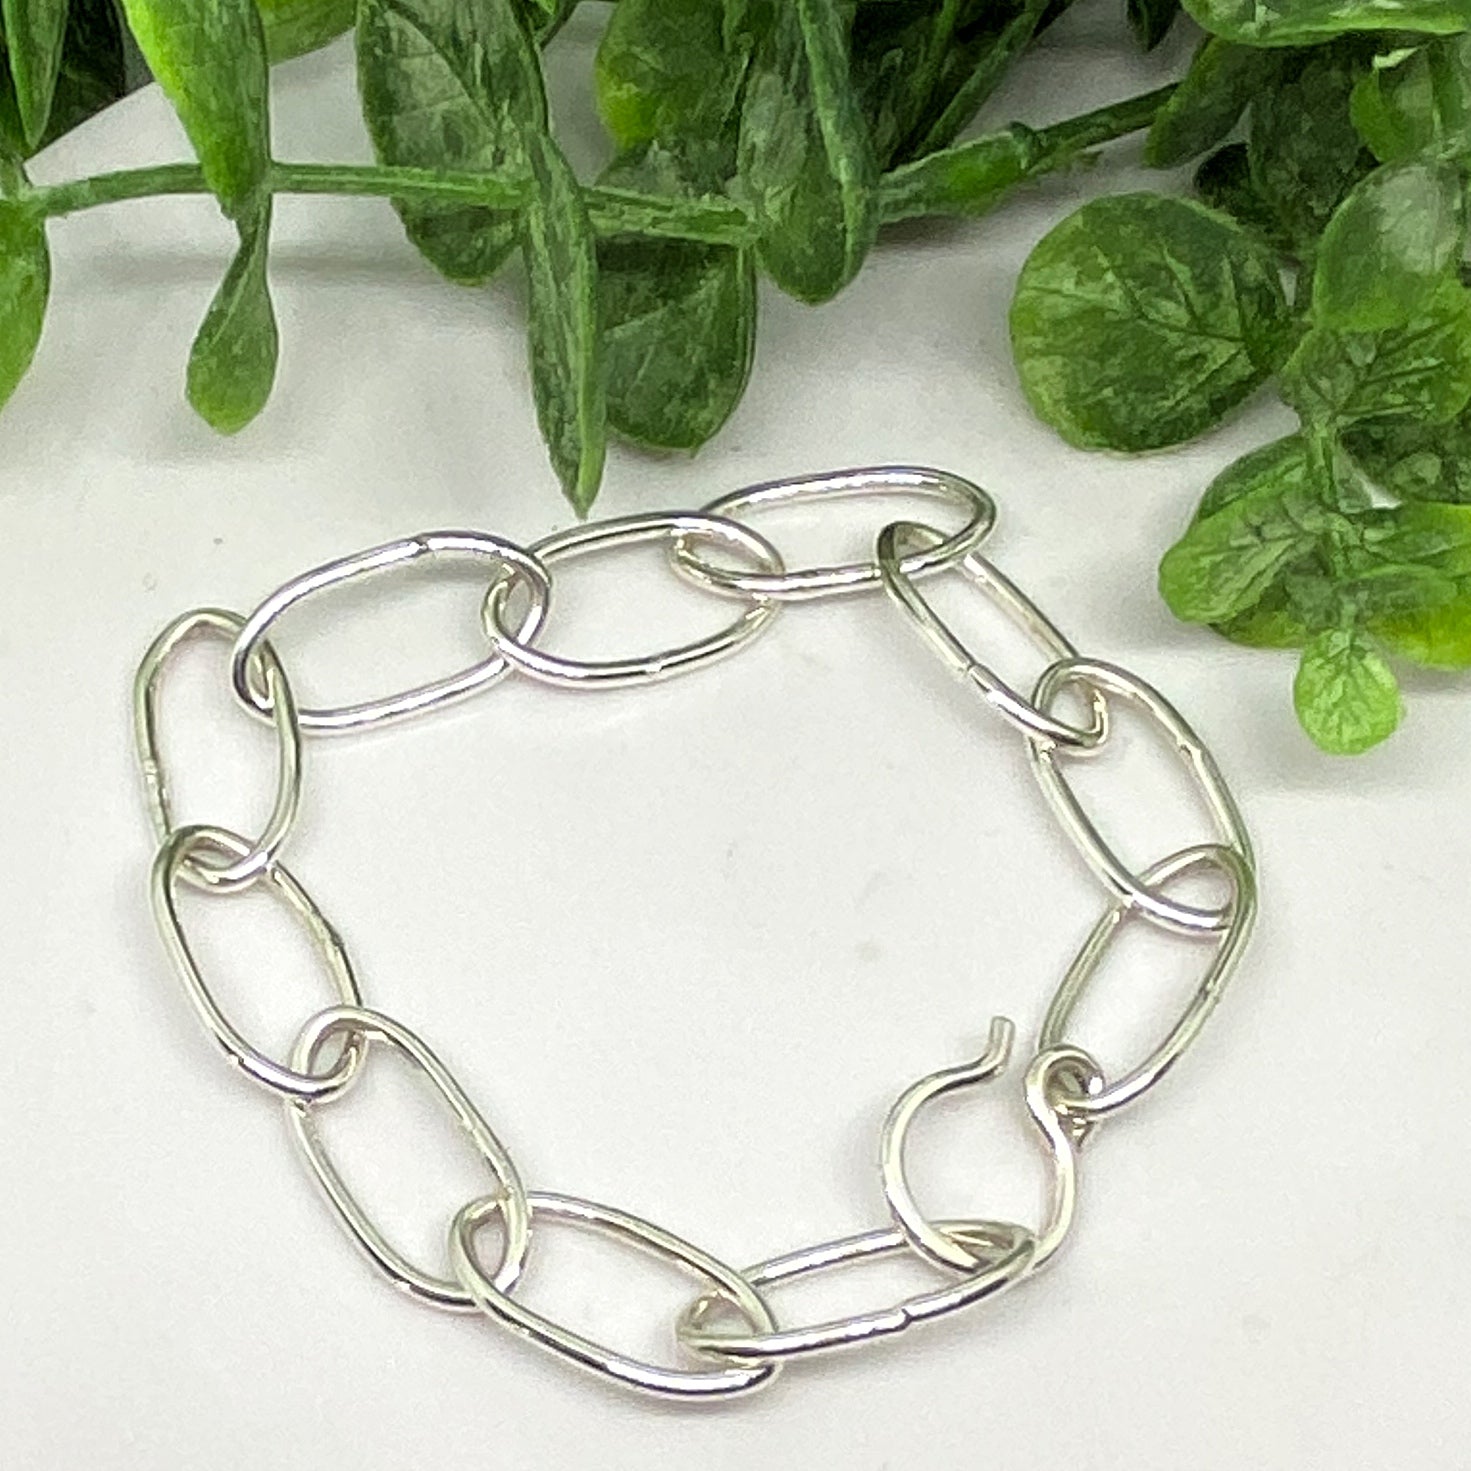 Heavy silver oblong links chain bracelet, Shop